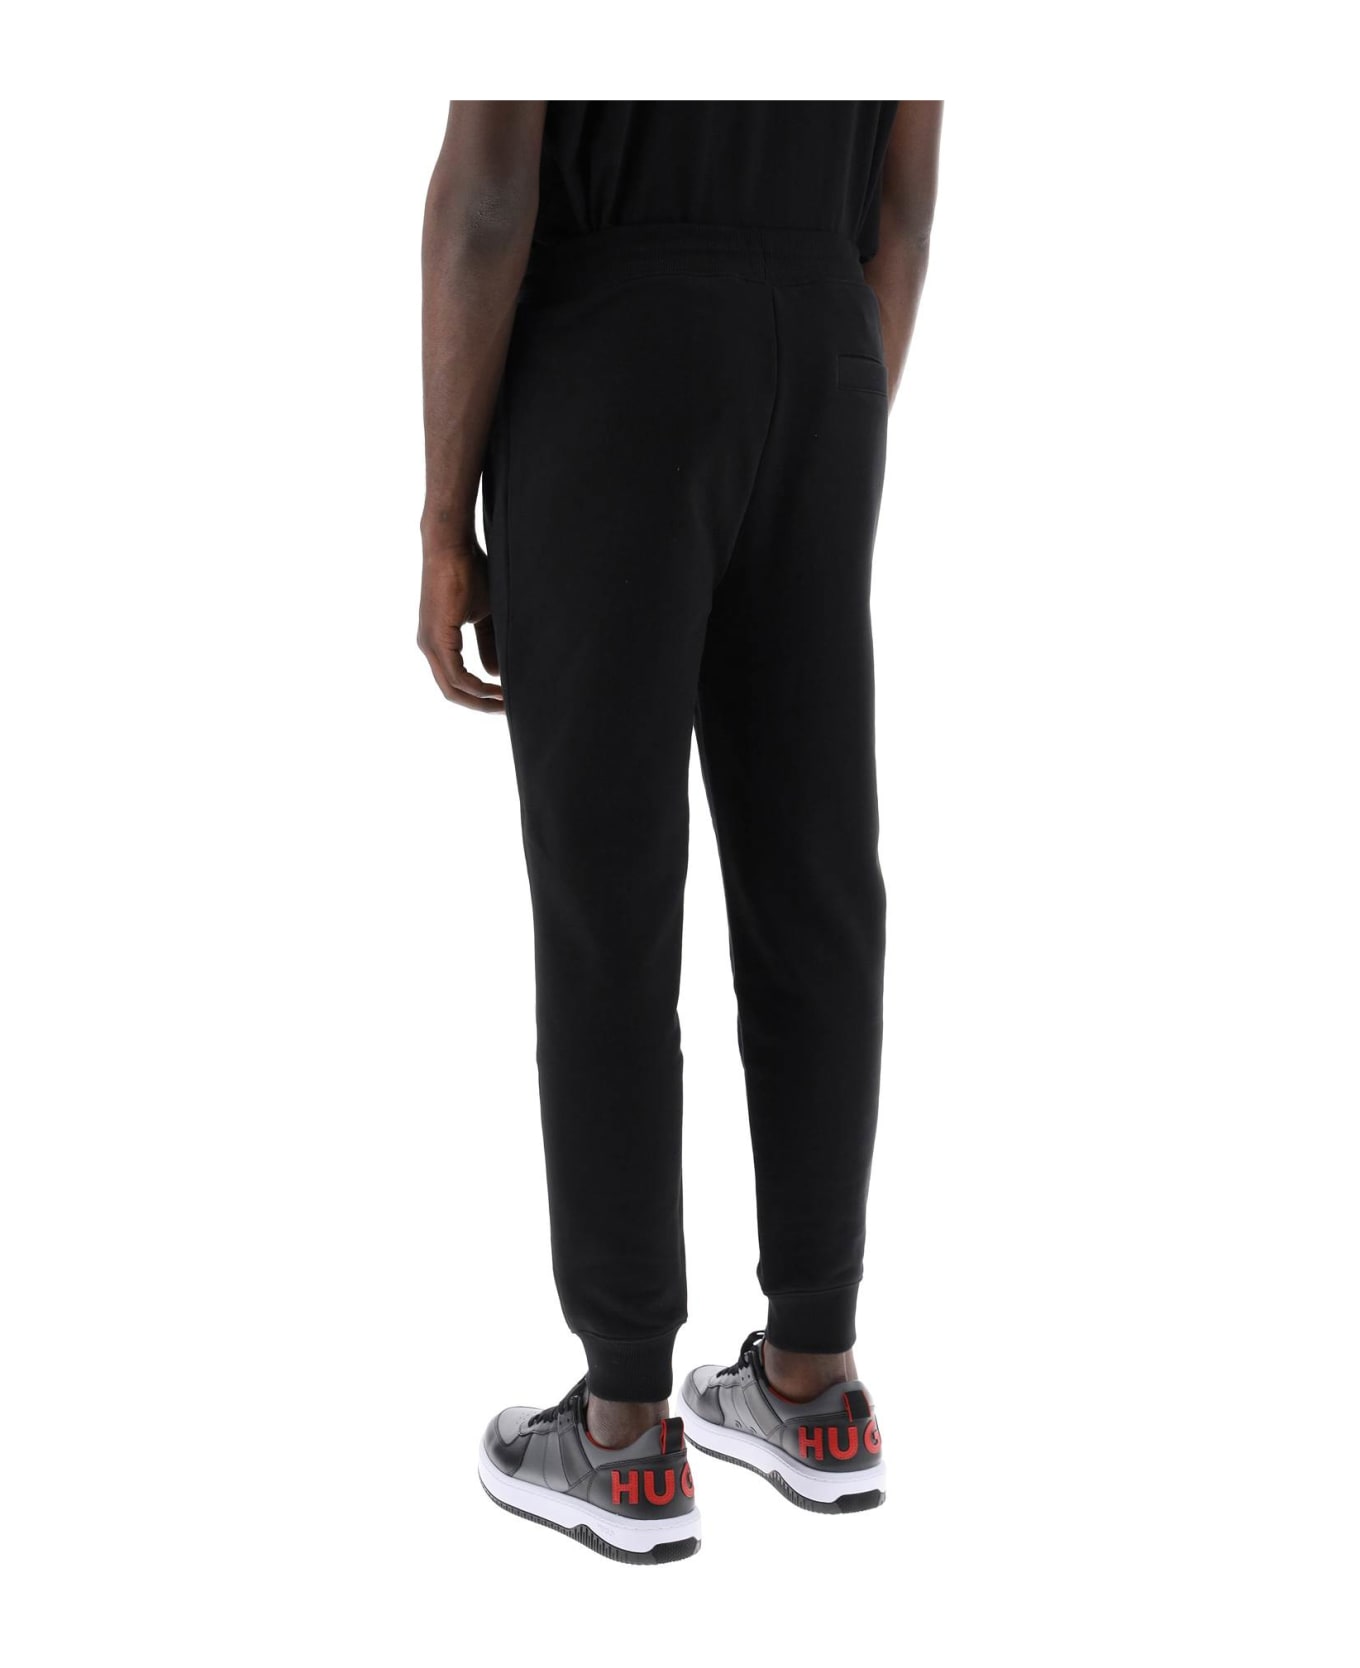 Hugo Boss Cotton Doak Jogger Pants - BLACK 009 (Black)